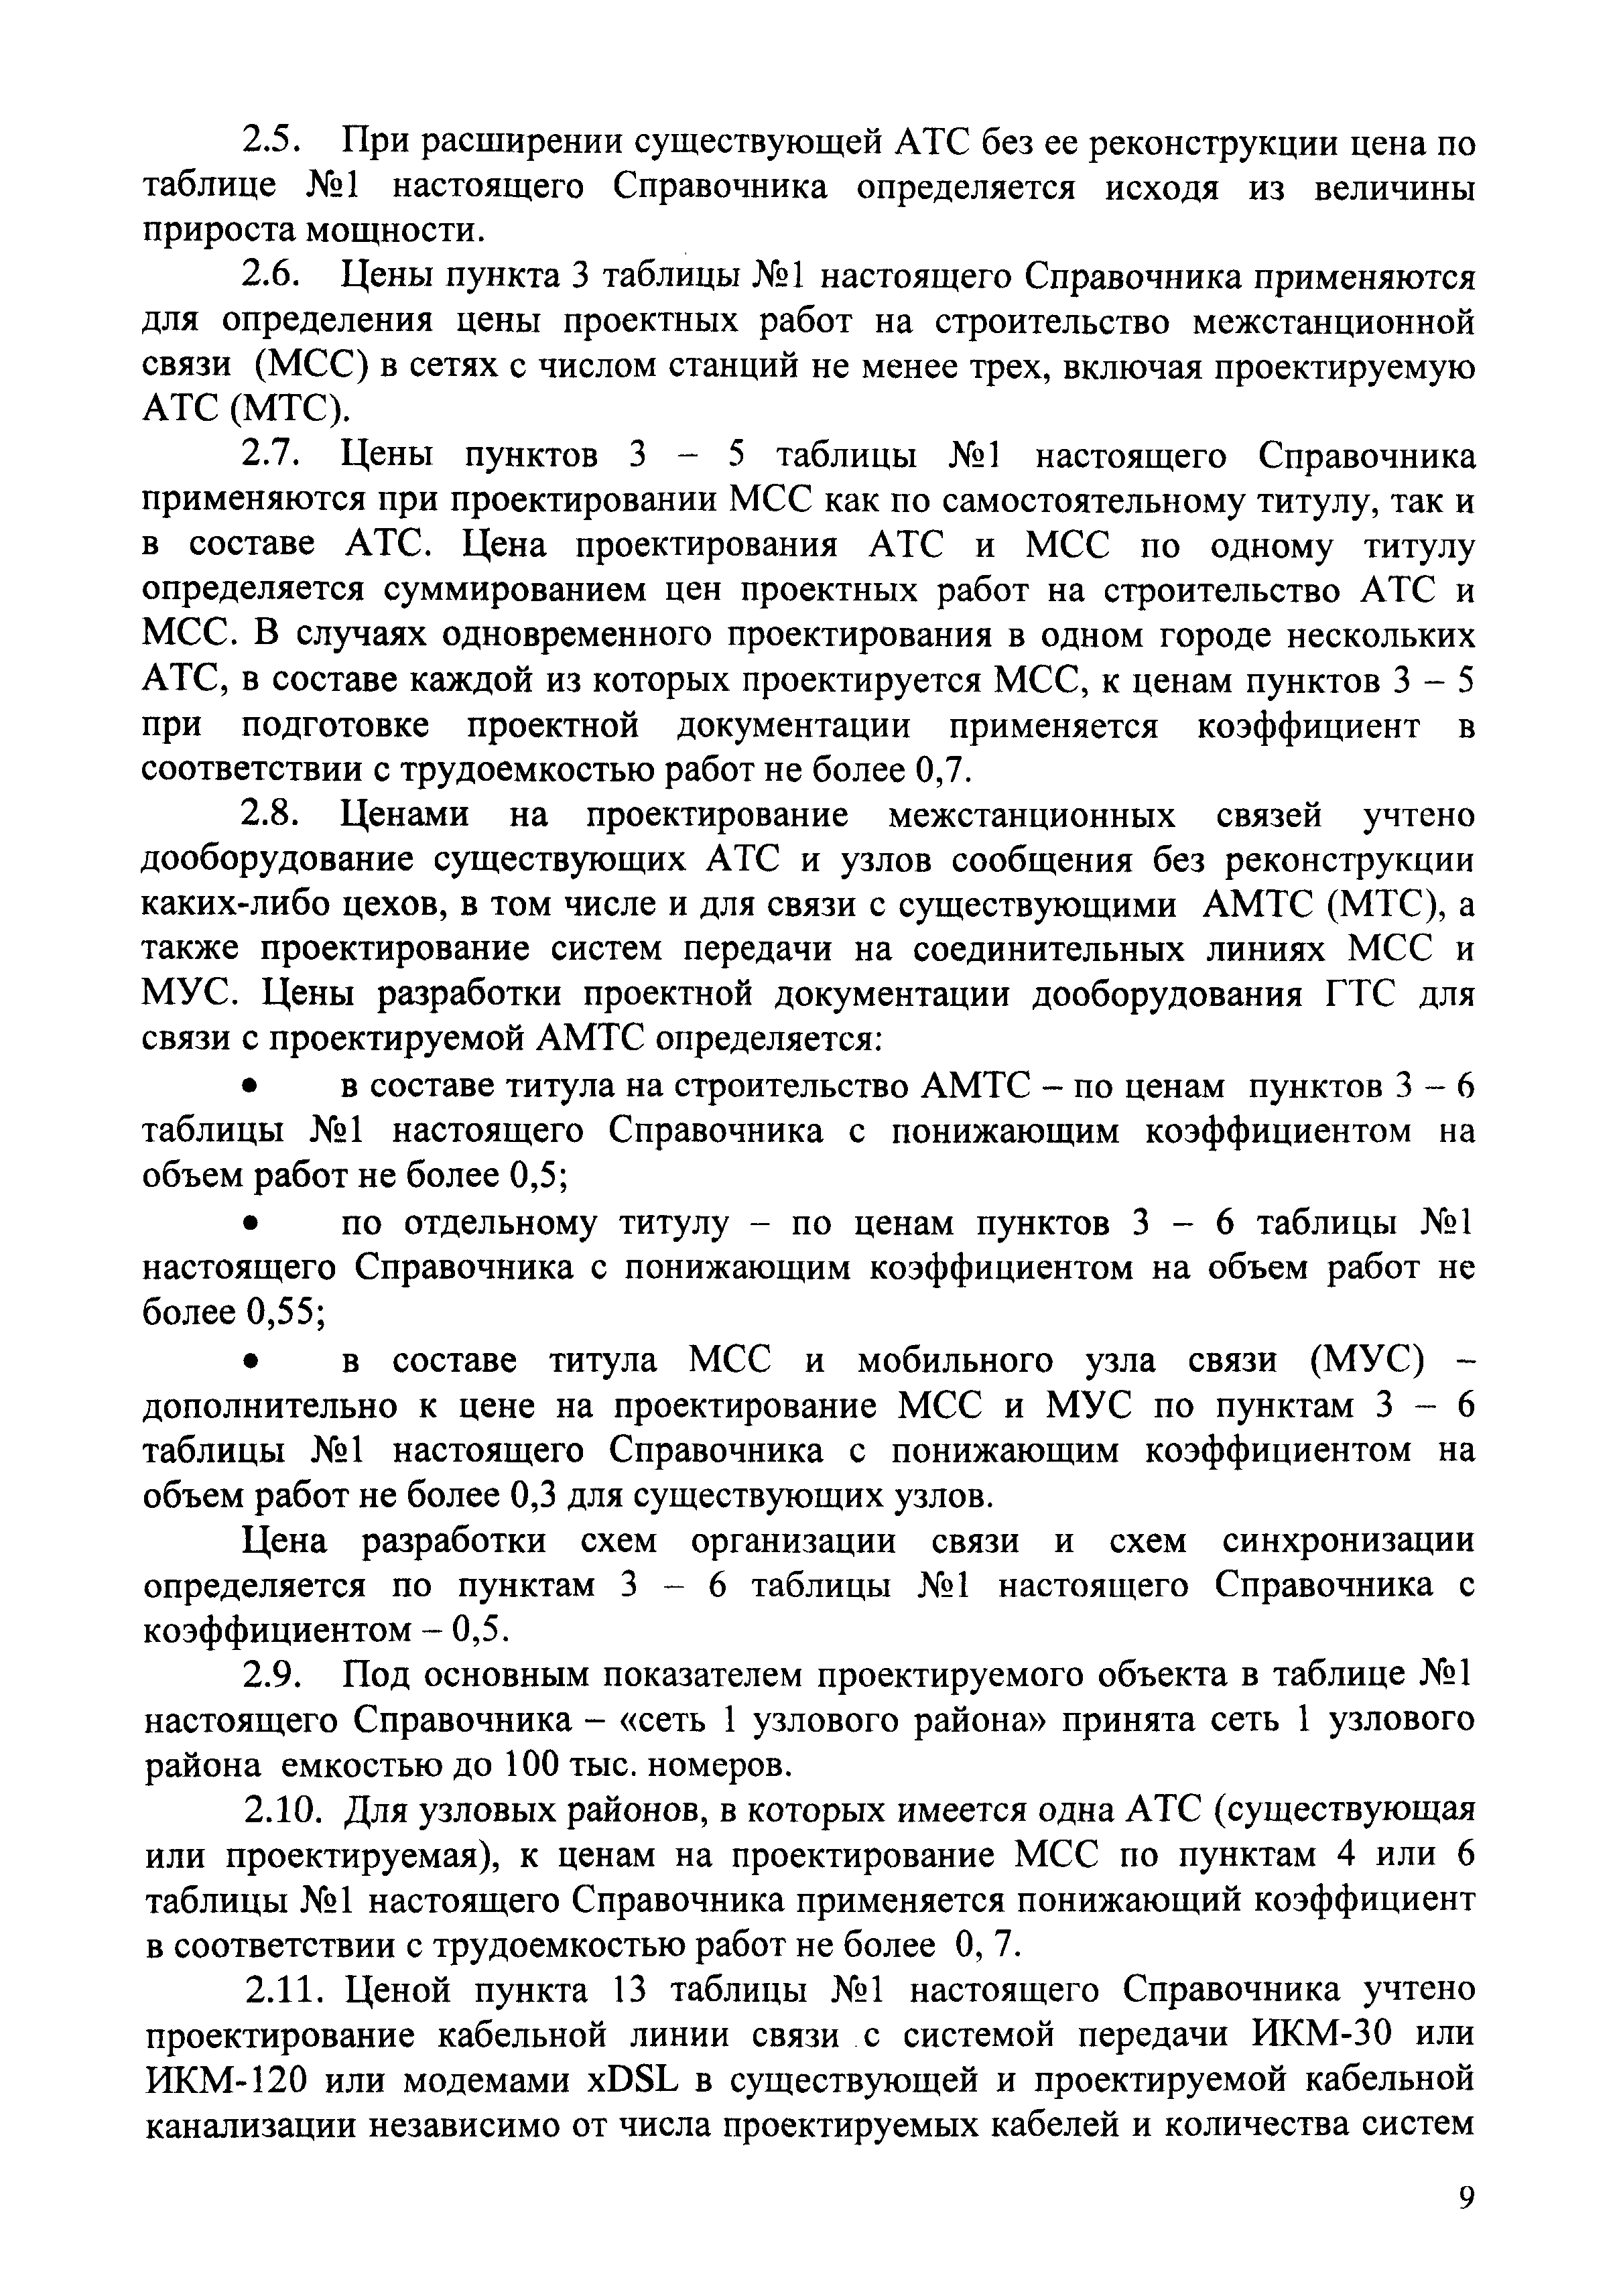 СБЦП 81-2001-02